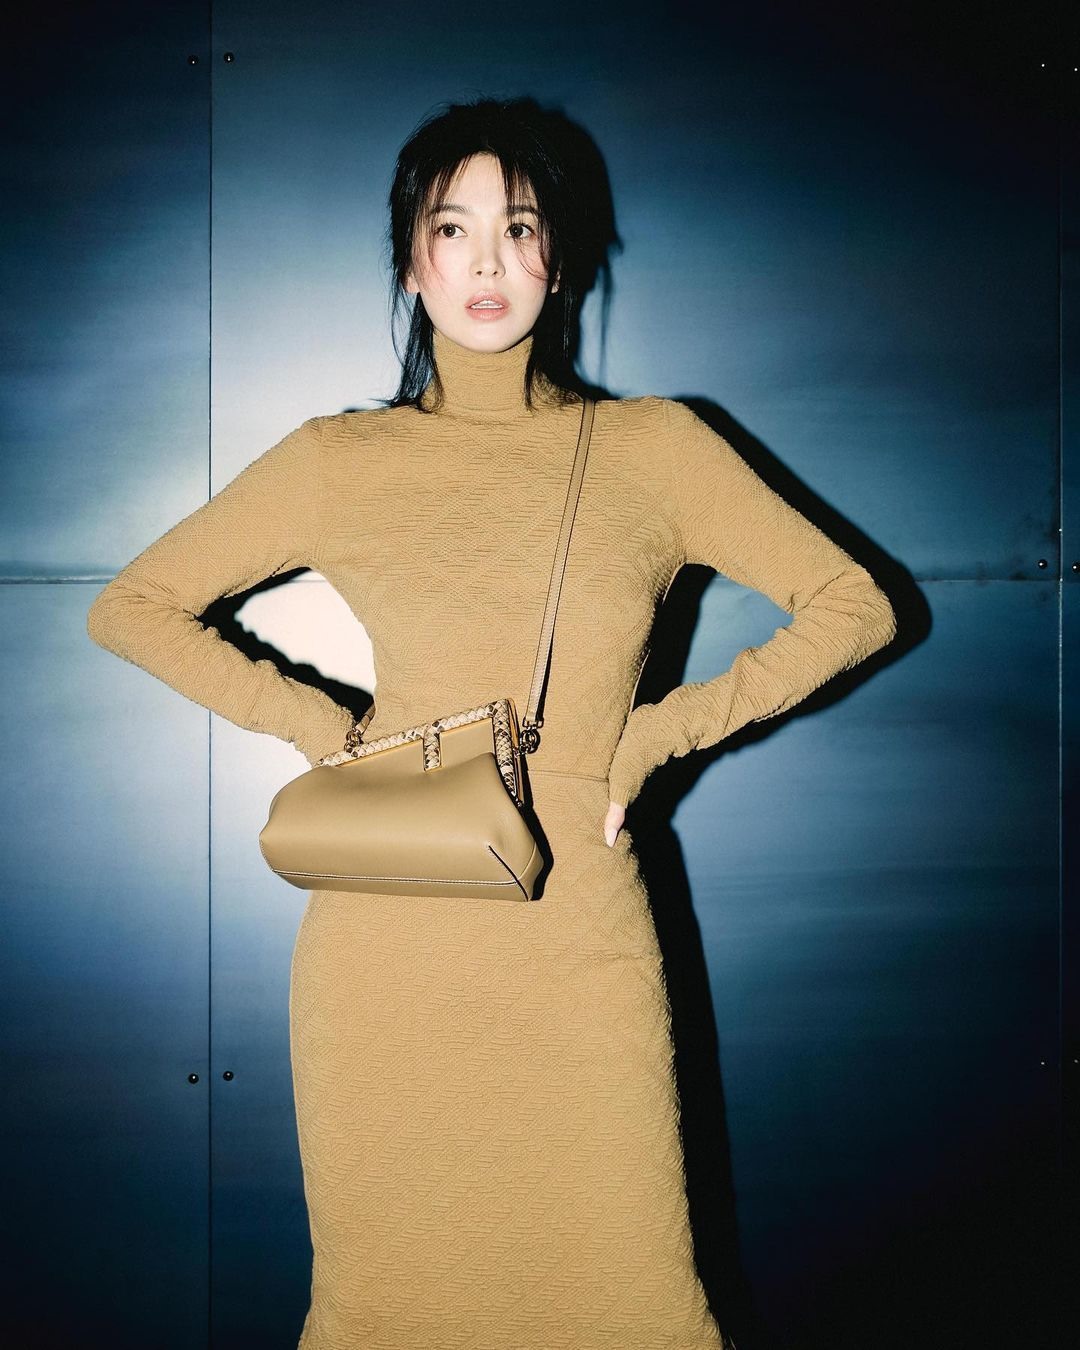 7749 outfit đẳng cấp chứng minh Song Hye Kyo là đại sứ hoàn hảo của Fendi - Ảnh 12.